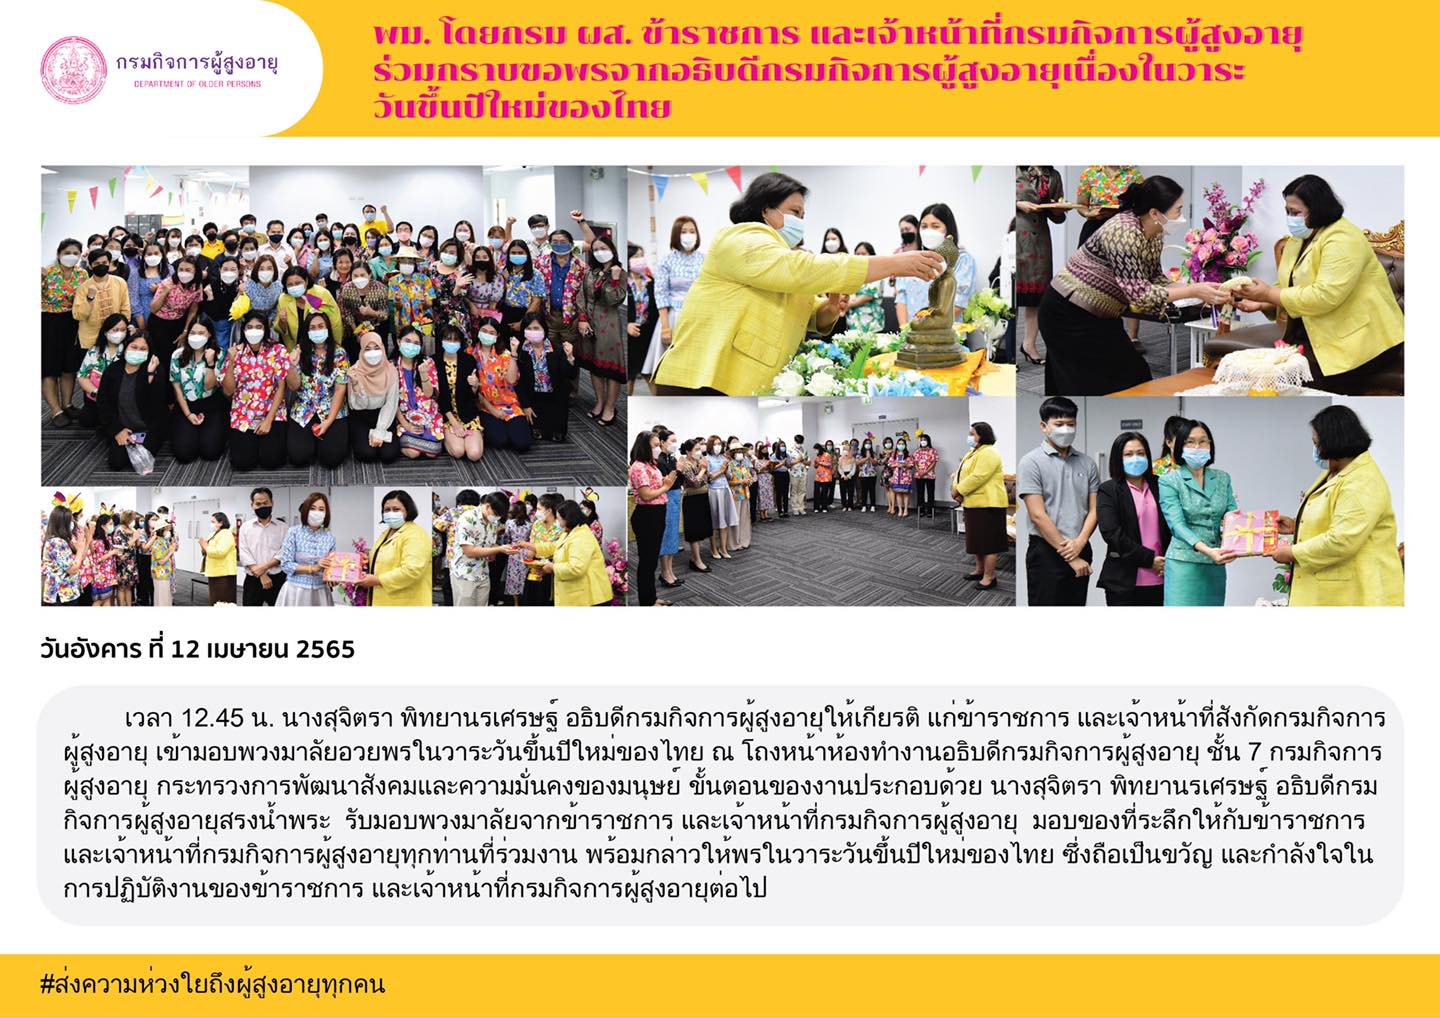 พม. โดยกรม ผส. ข้าราชการ และเจ้าหน้าที่กรมกิจการผู้สูงอายุร่วมกราบขอพรจากอธิบดีกรมกิจการผู้สูงอายุ  เนื่องในวาระวันขึ้นปีใหม่ของไทย